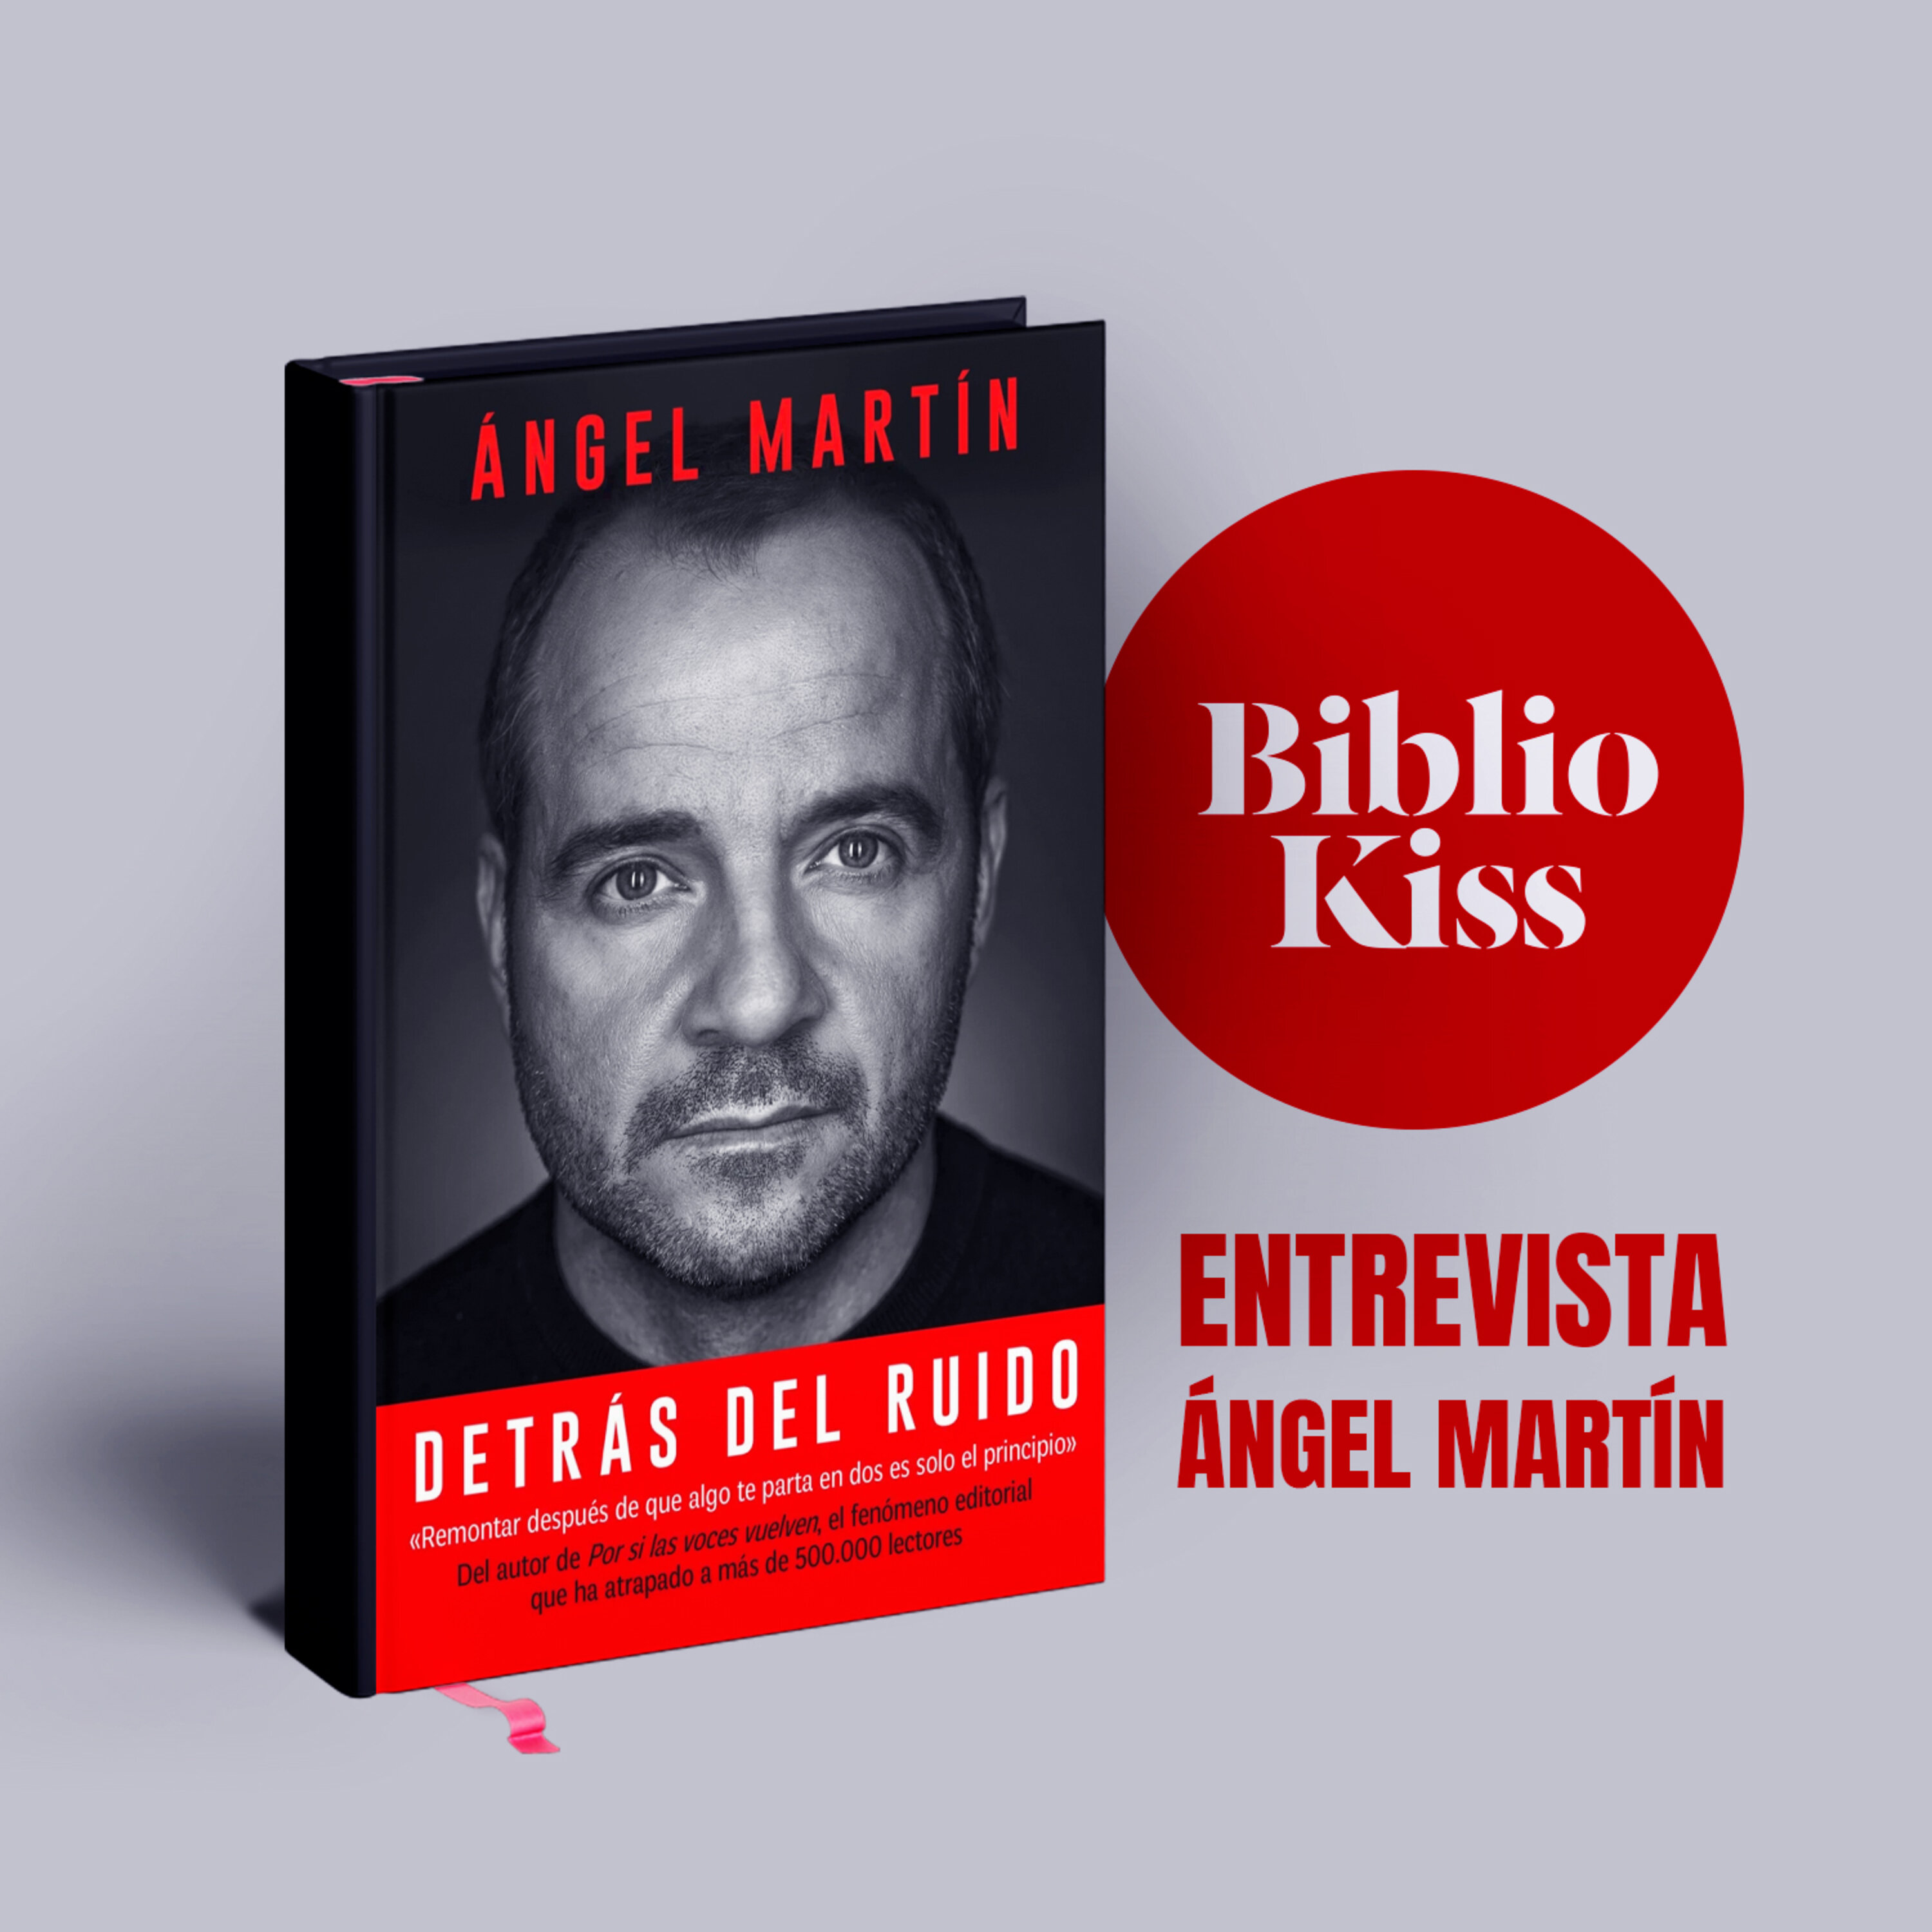 Ángel Martín nos invita a conocer qué hay “Detrás del ruido”